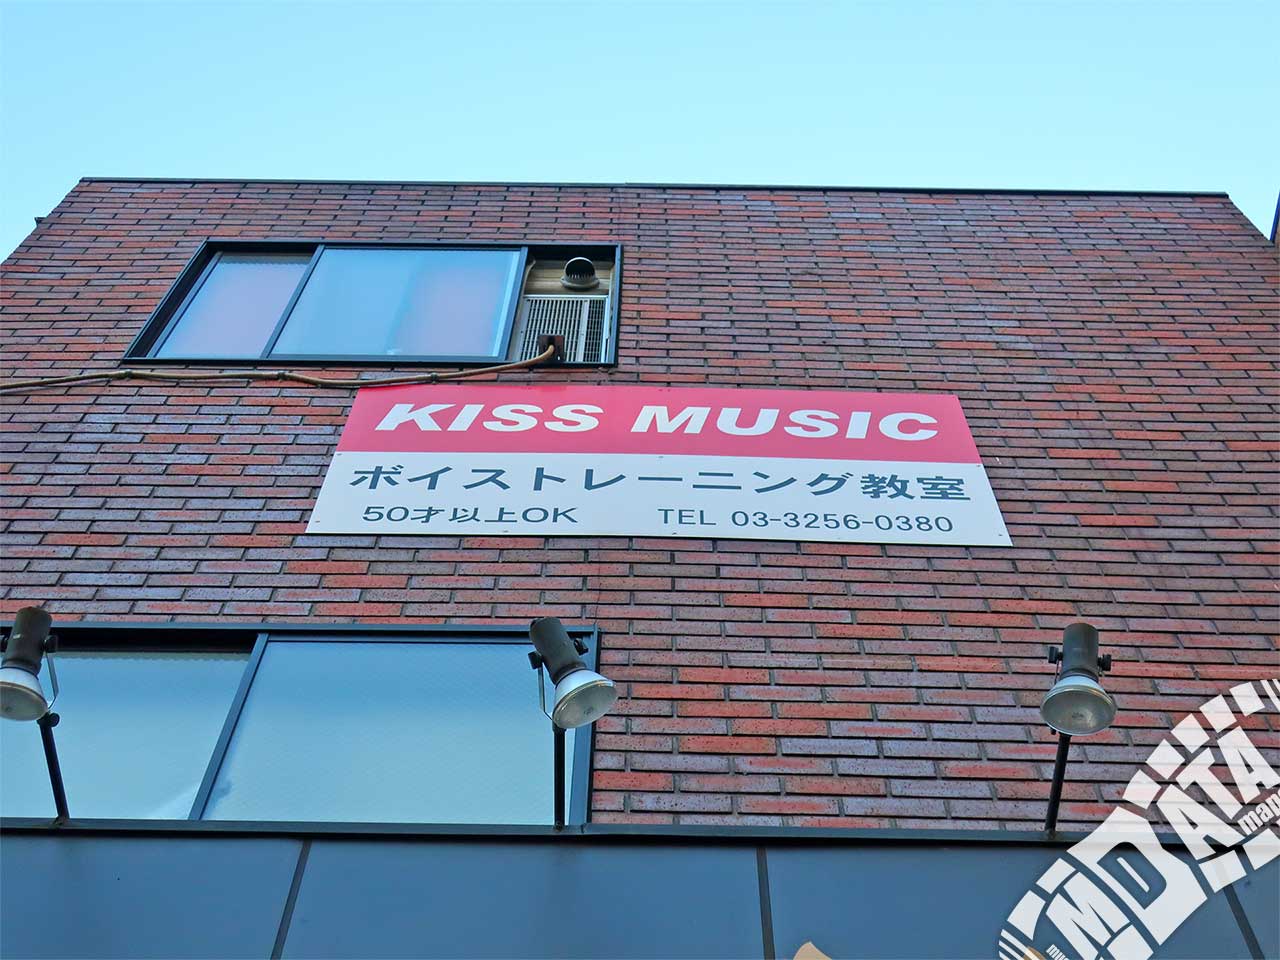 ボイストレーニングKISS MUSICの写真 撮影日:2017/12/21 Photo taken on 2017/12/21